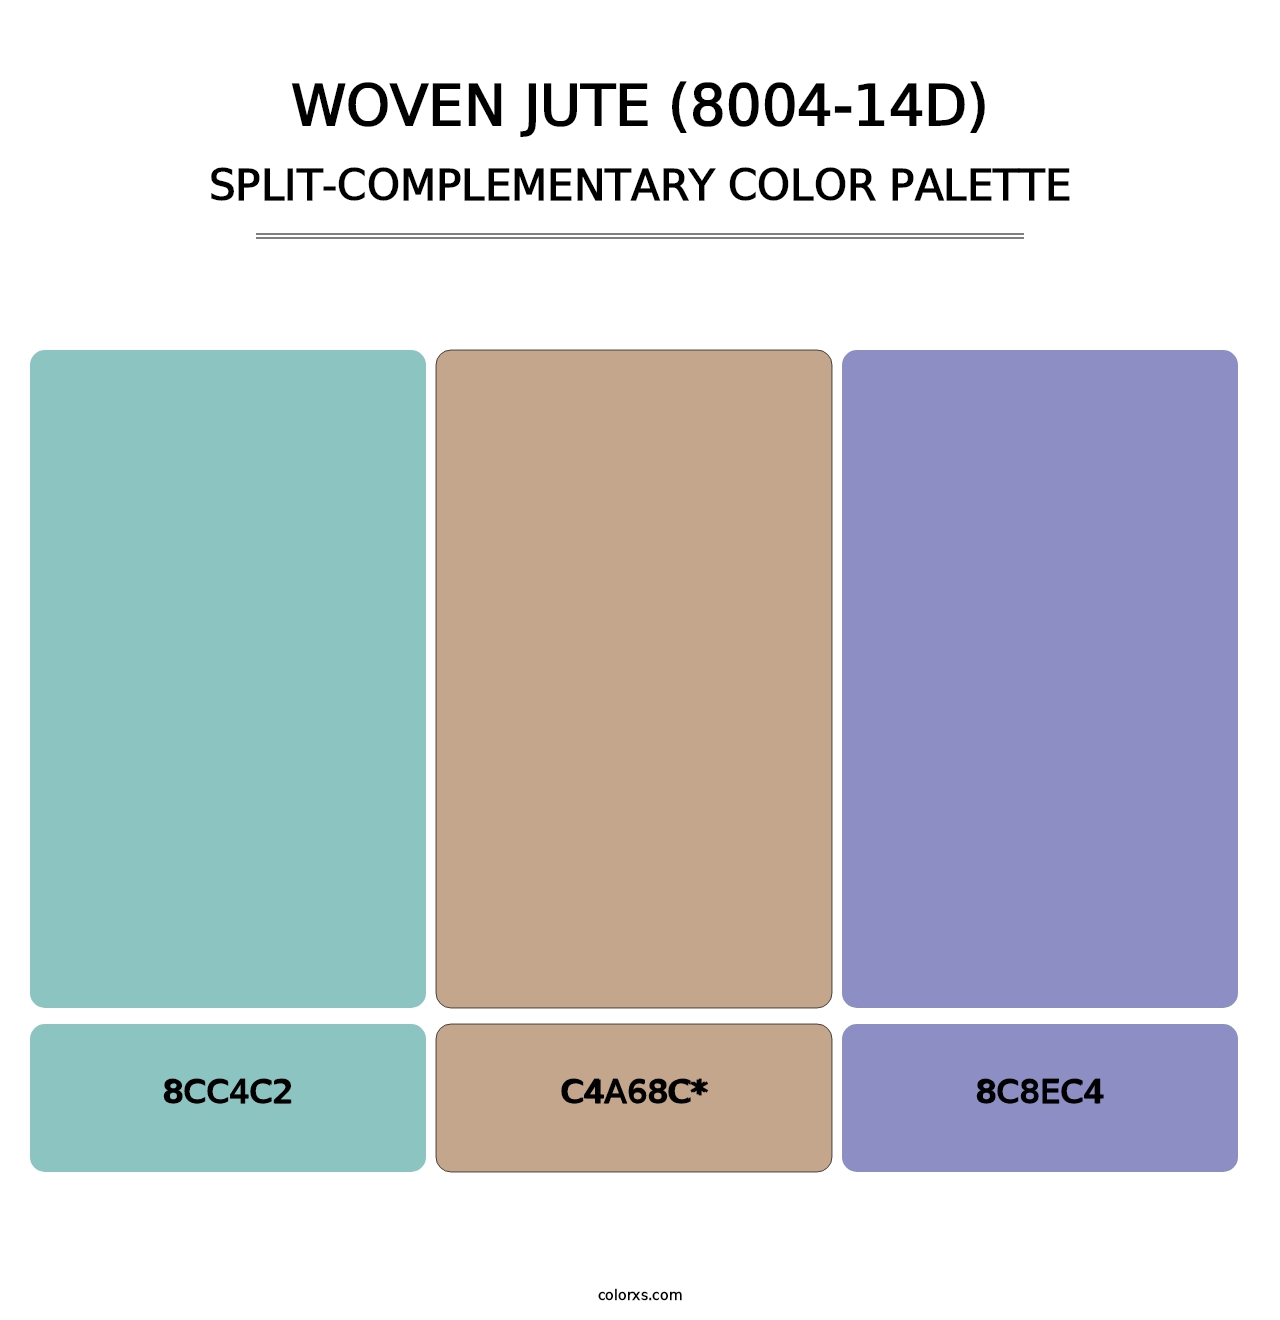 Woven Jute (8004-14D) - Split-Complementary Color Palette